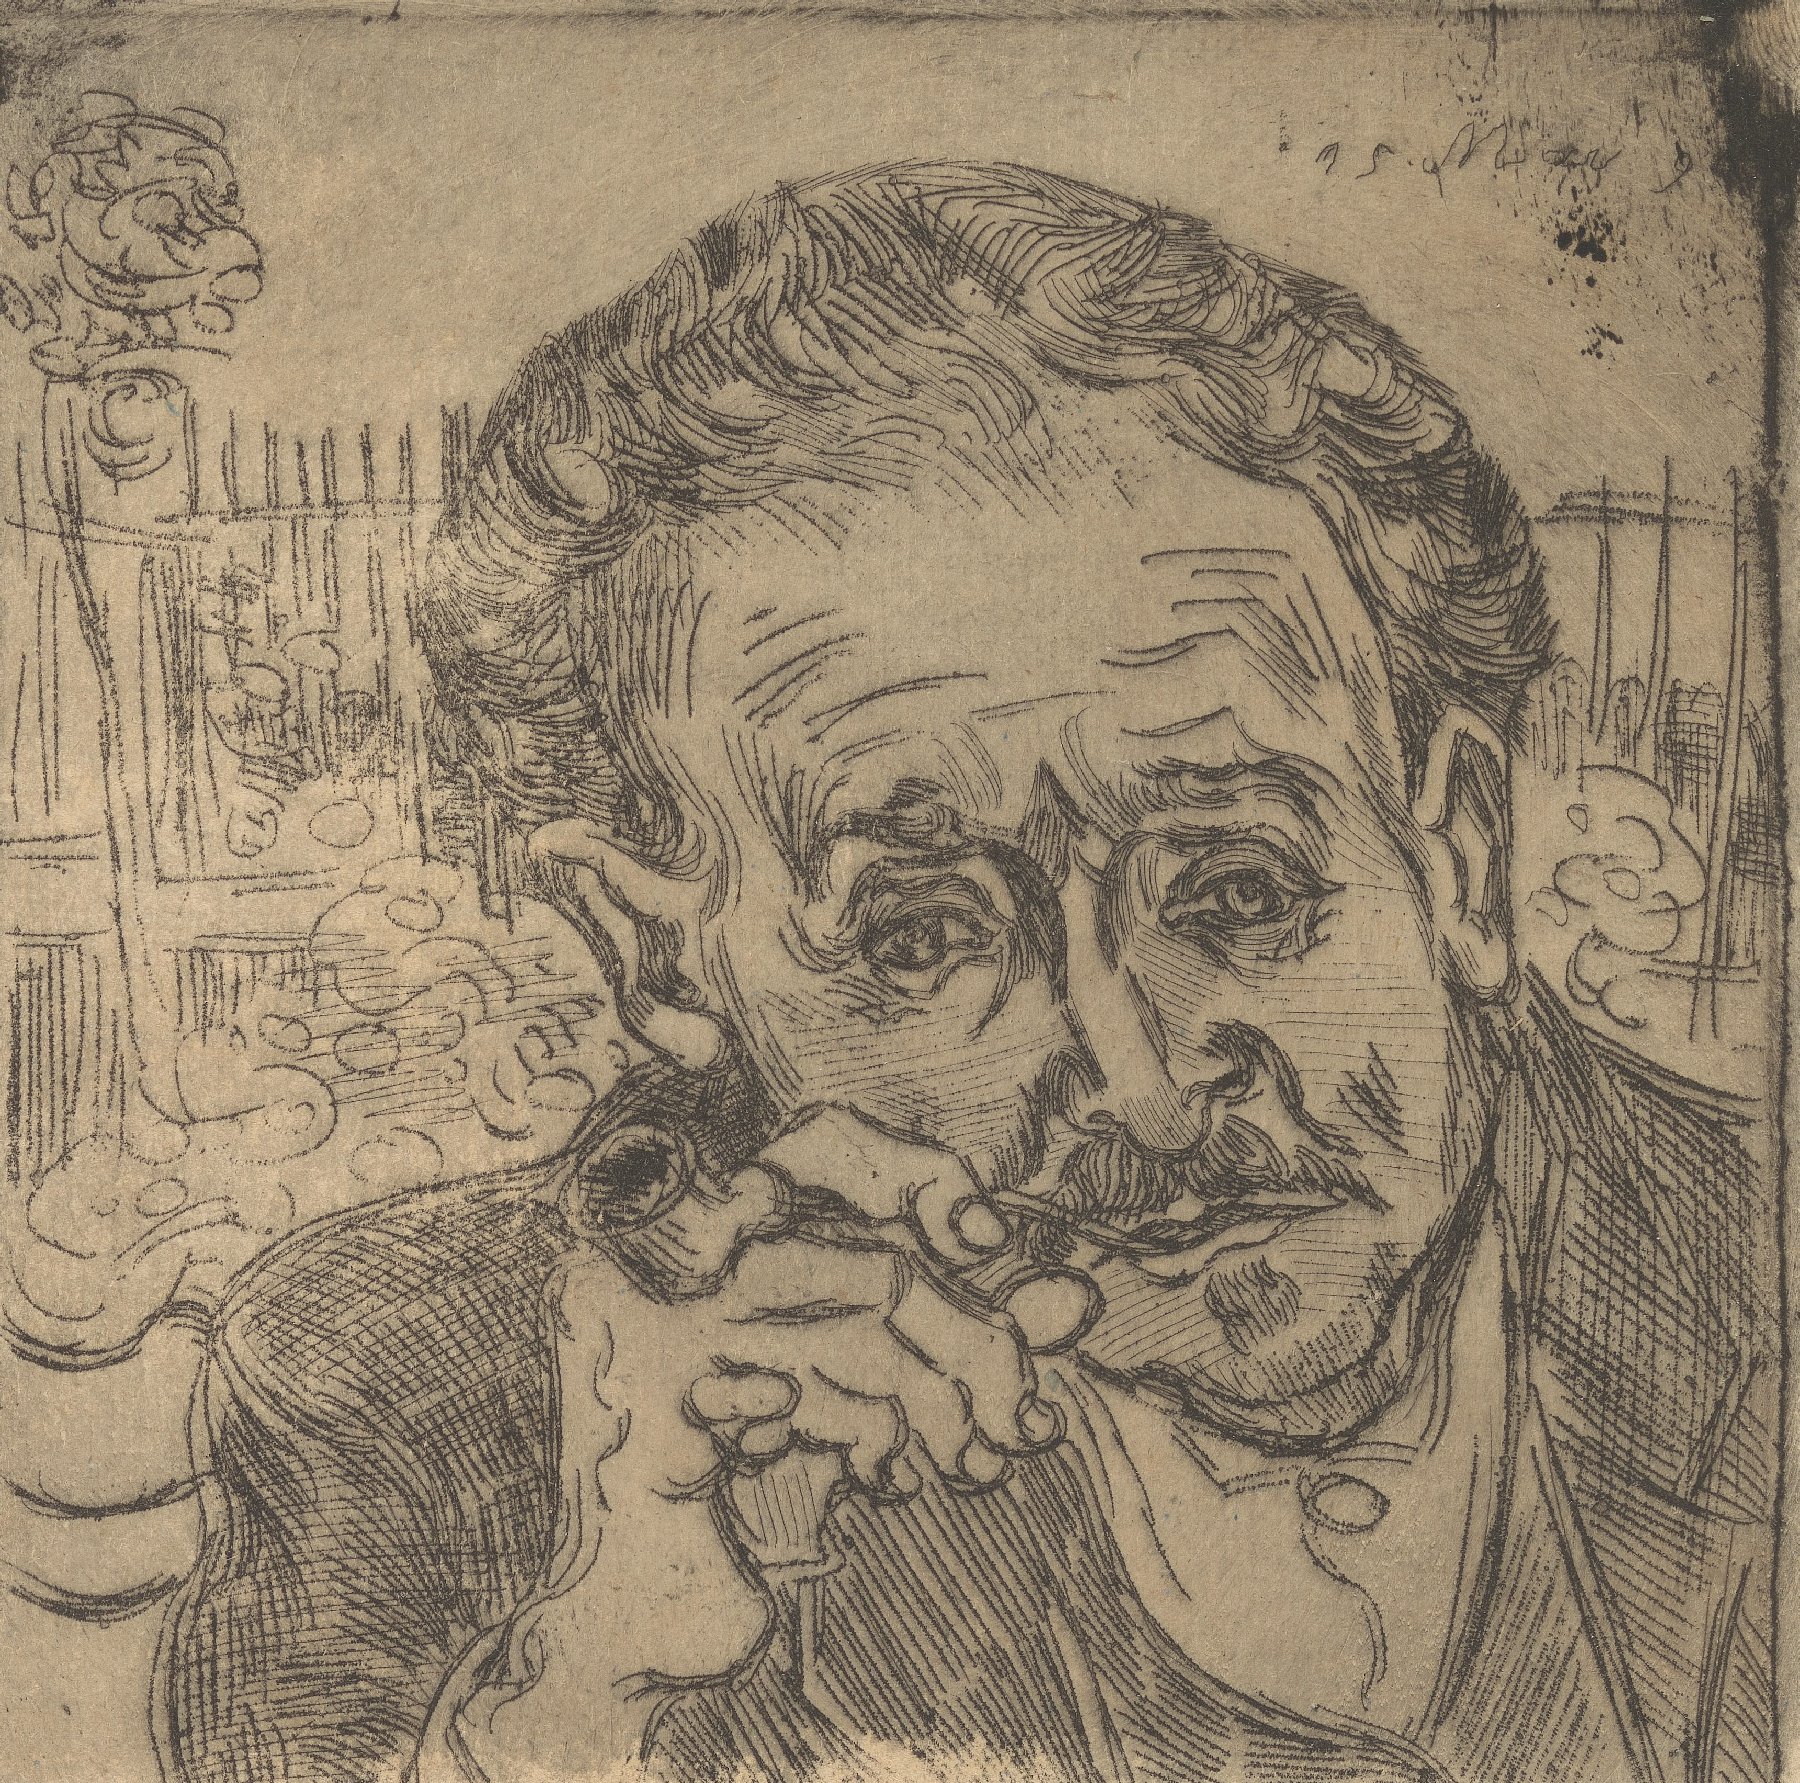 Portret van dokter Gachet Vincent van Gogh (1853 - 1890), Auvers-sur-Oise, juni 1890